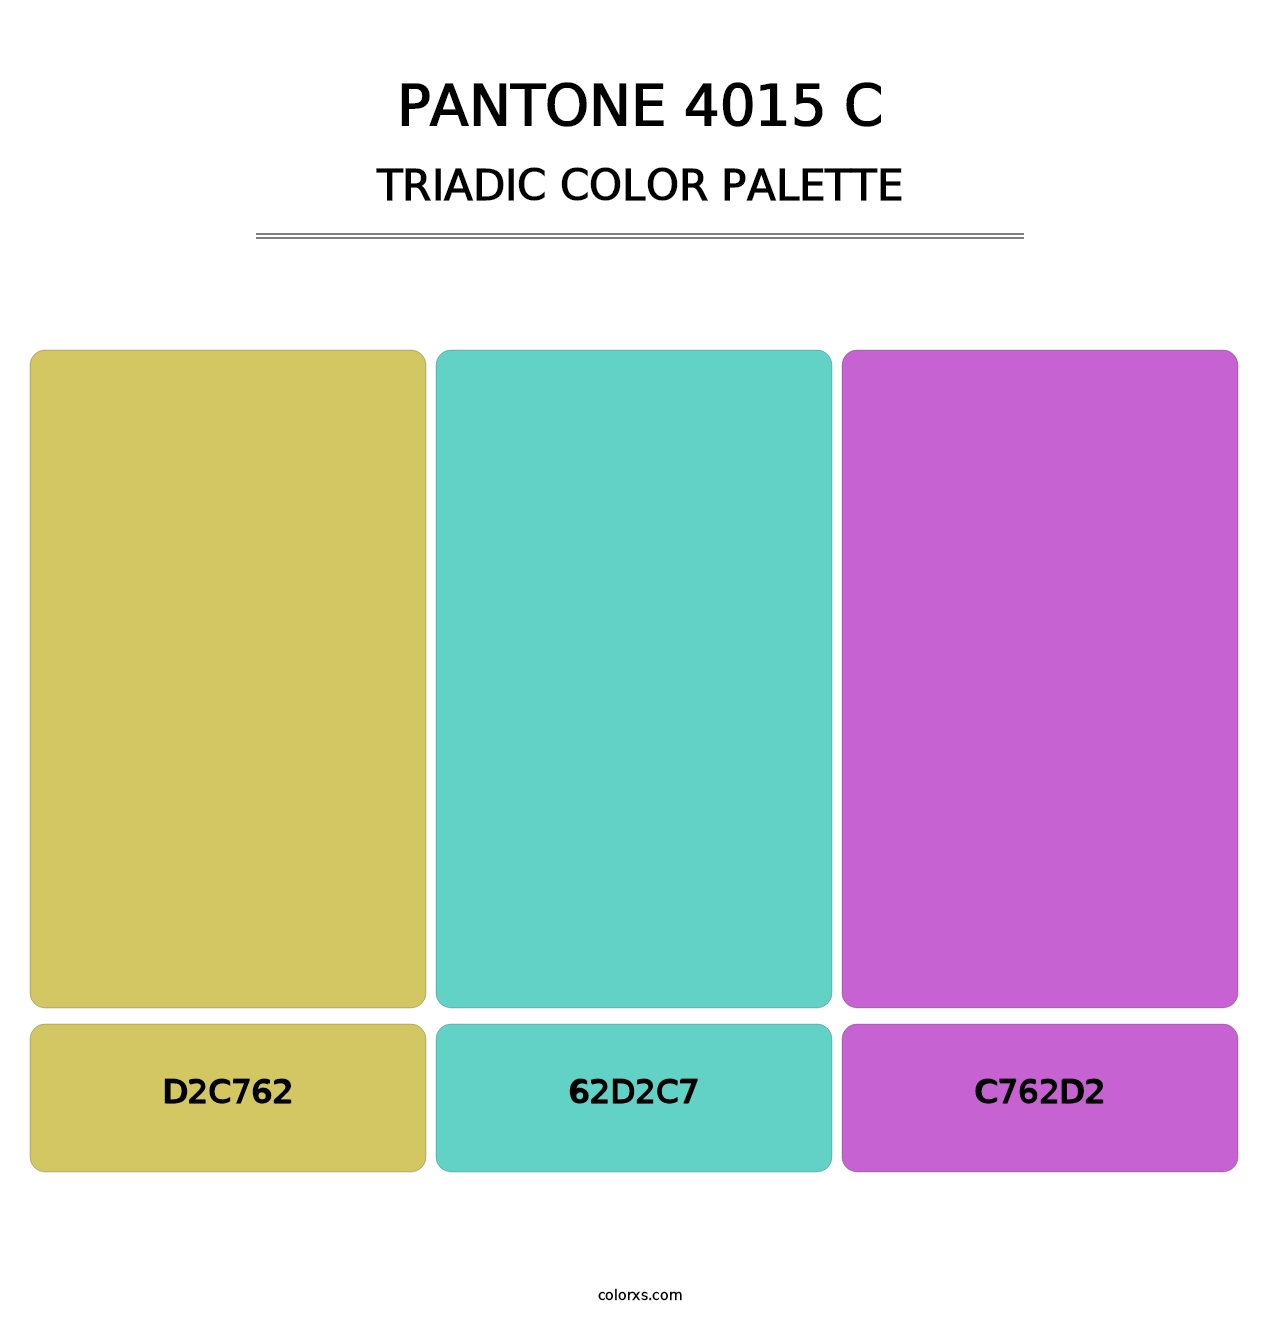 PANTONE 4015 C - Triadic Color Palette